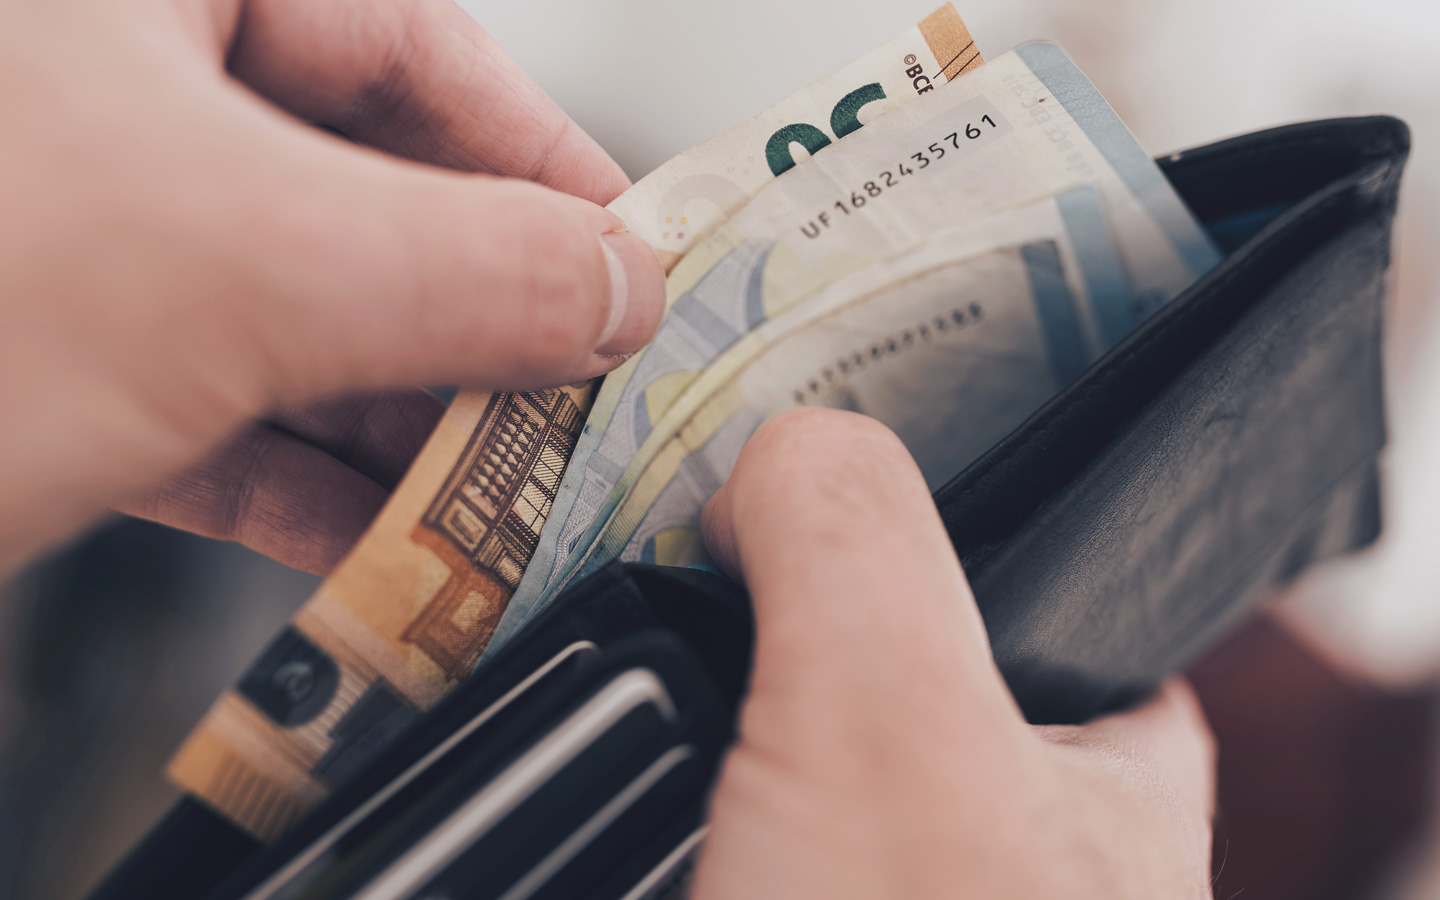 Foto: Portemonnaie mit Geldscheinen in Euro